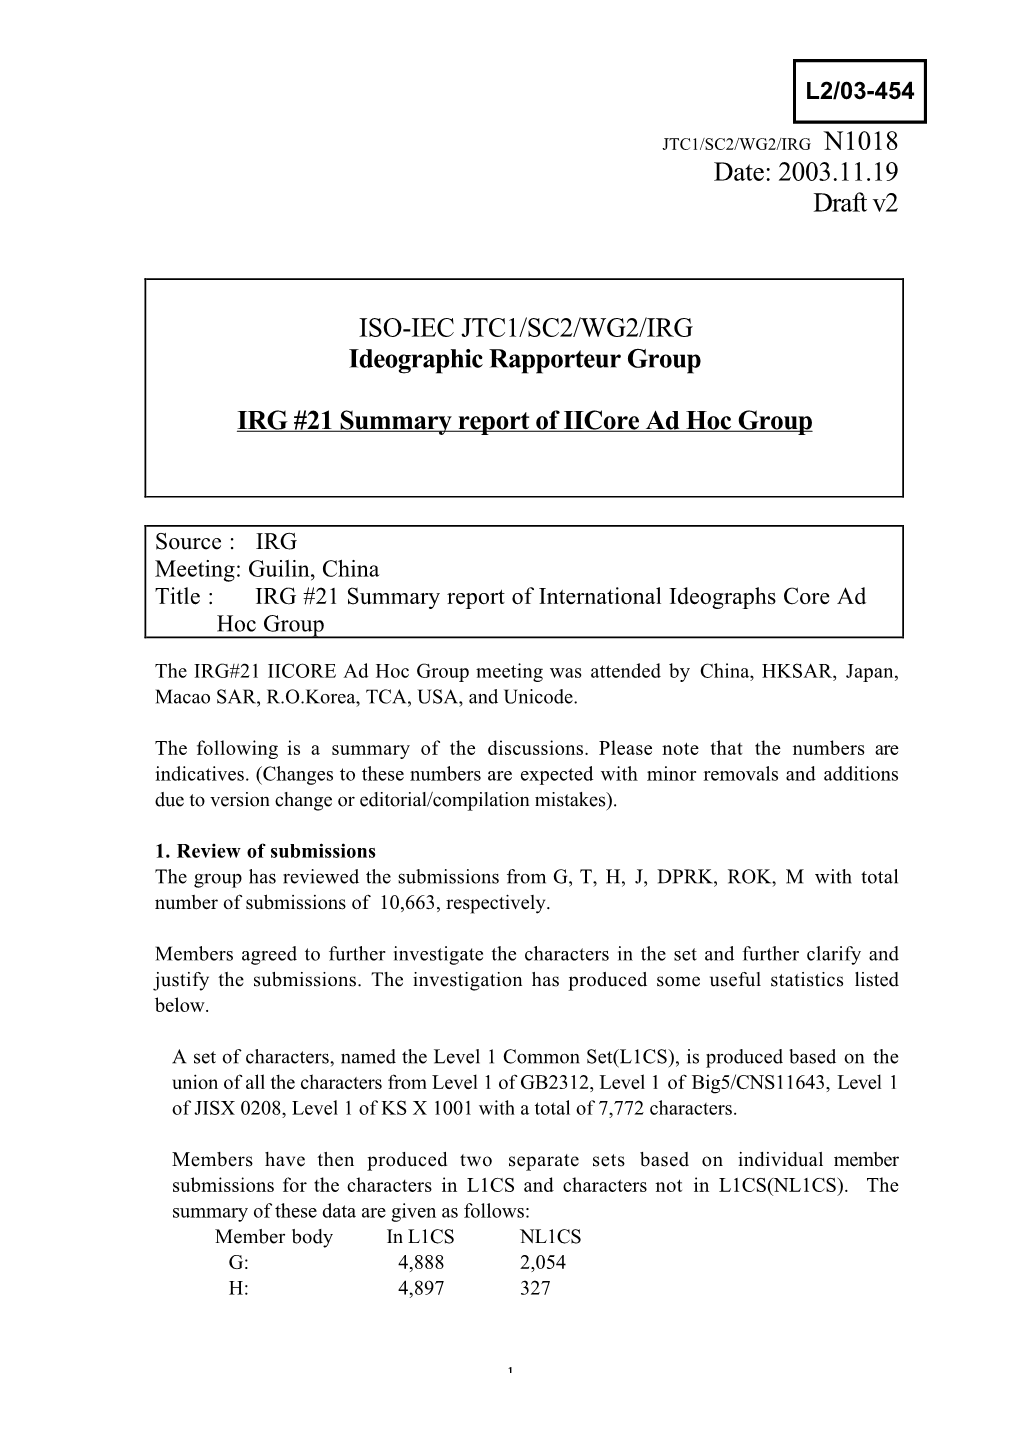 2003.11.19 Draft V2 ISO-IEC JTC1/SC2/WG2/IRG